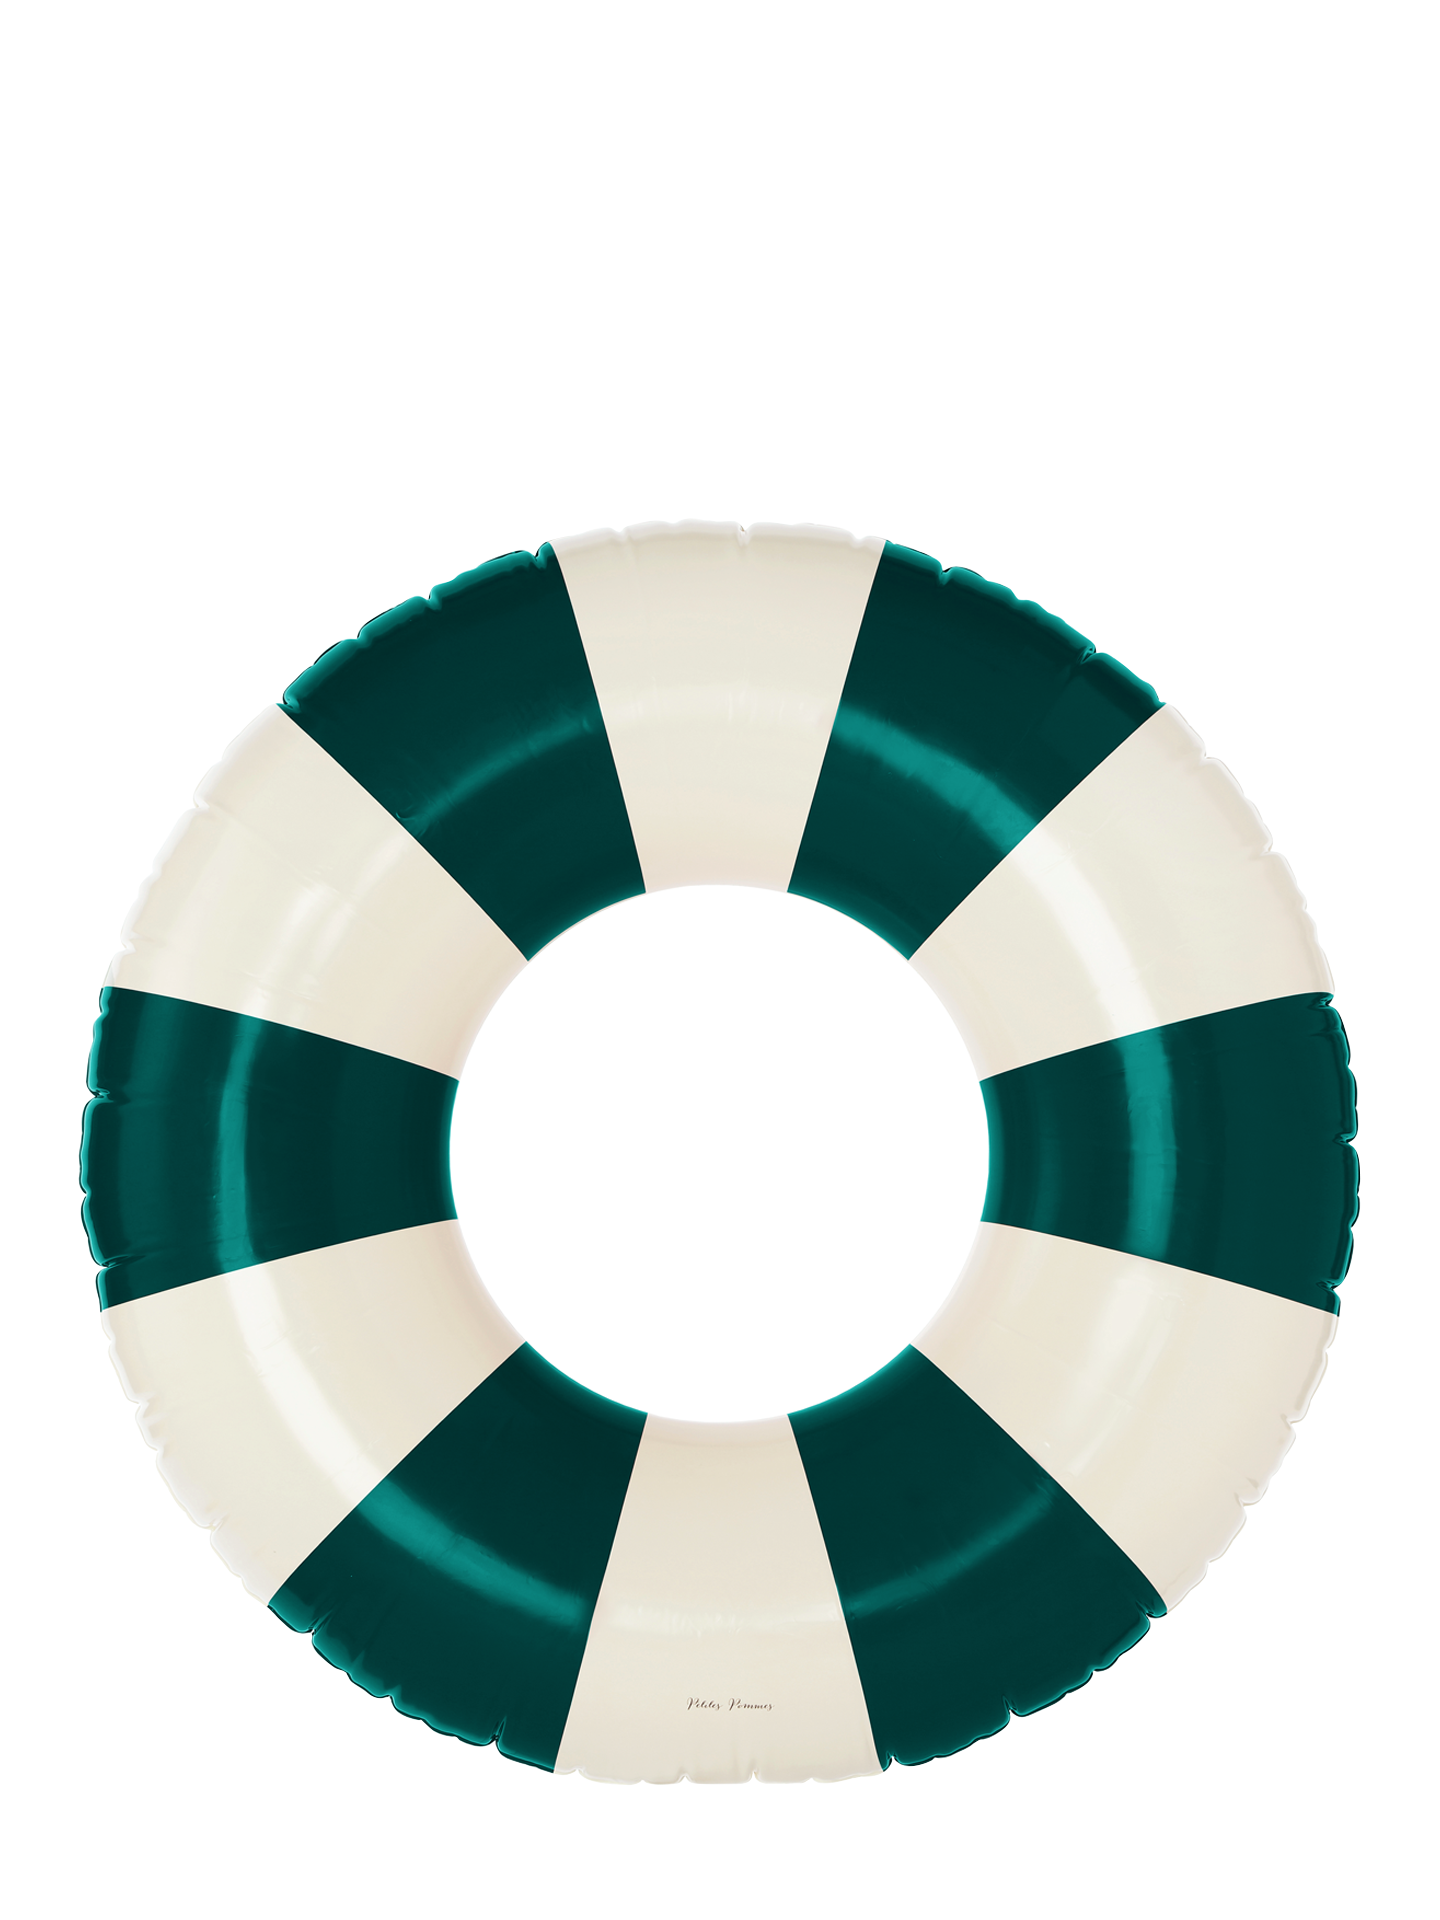 Celine Grand Float 120 cm, 7 colours